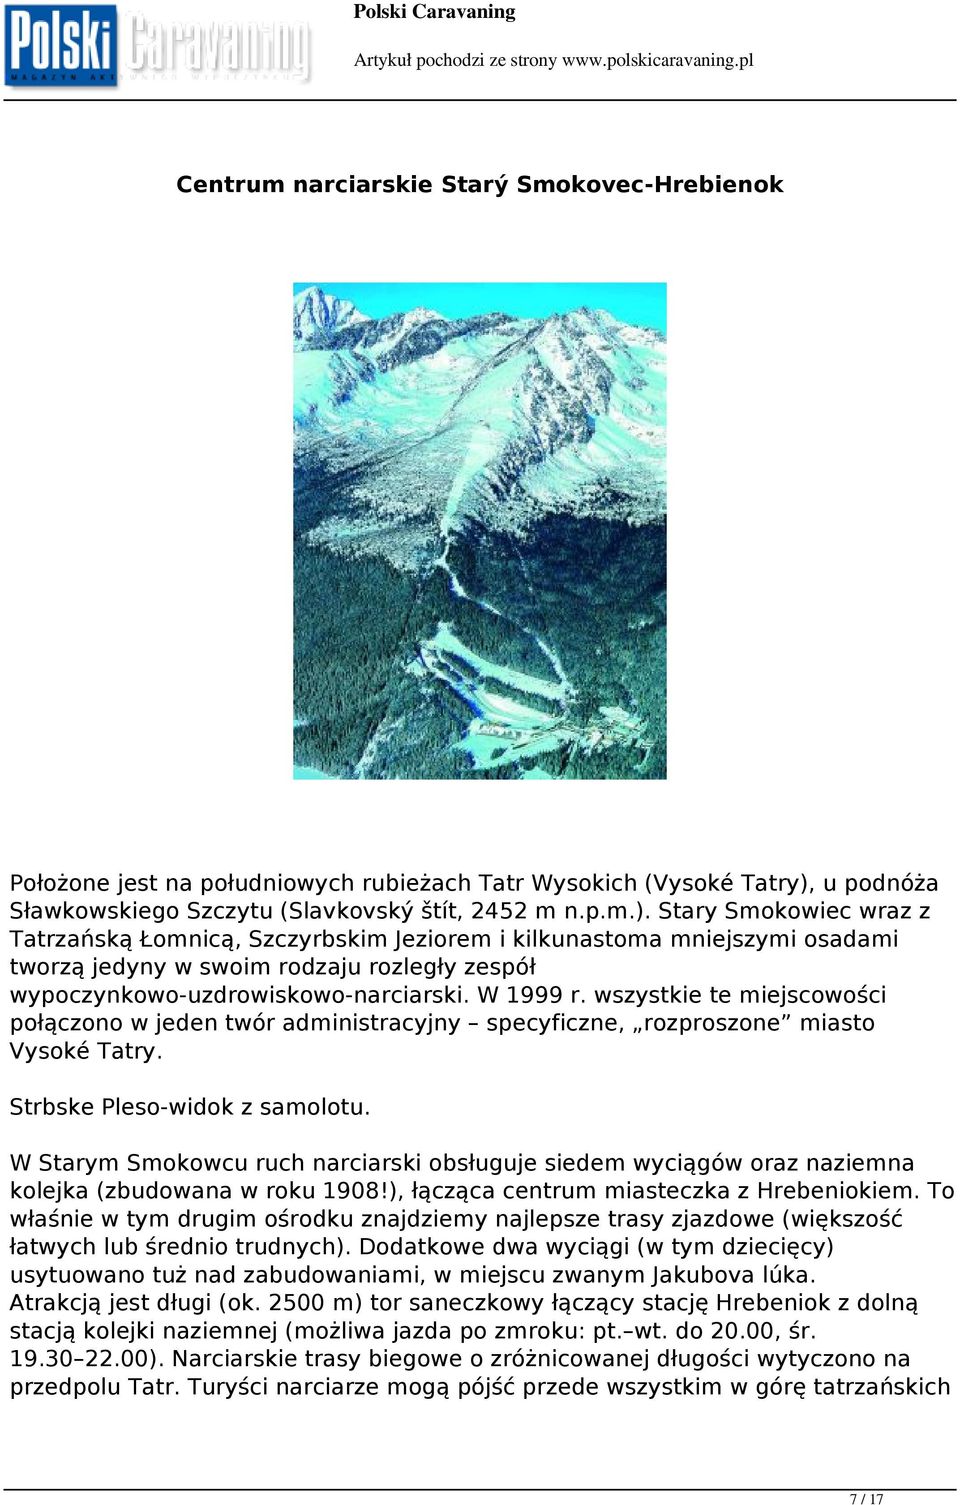 Stary Smokowiec wraz z Tatrzańską Łomnicą, Szczyrbskim Jeziorem i kilkunastoma mniejszymi osadami tworzą jedyny w swoim rodzaju rozległy zespół wypoczynkowo-uzdrowiskowo-narciarski. W 1999 r.